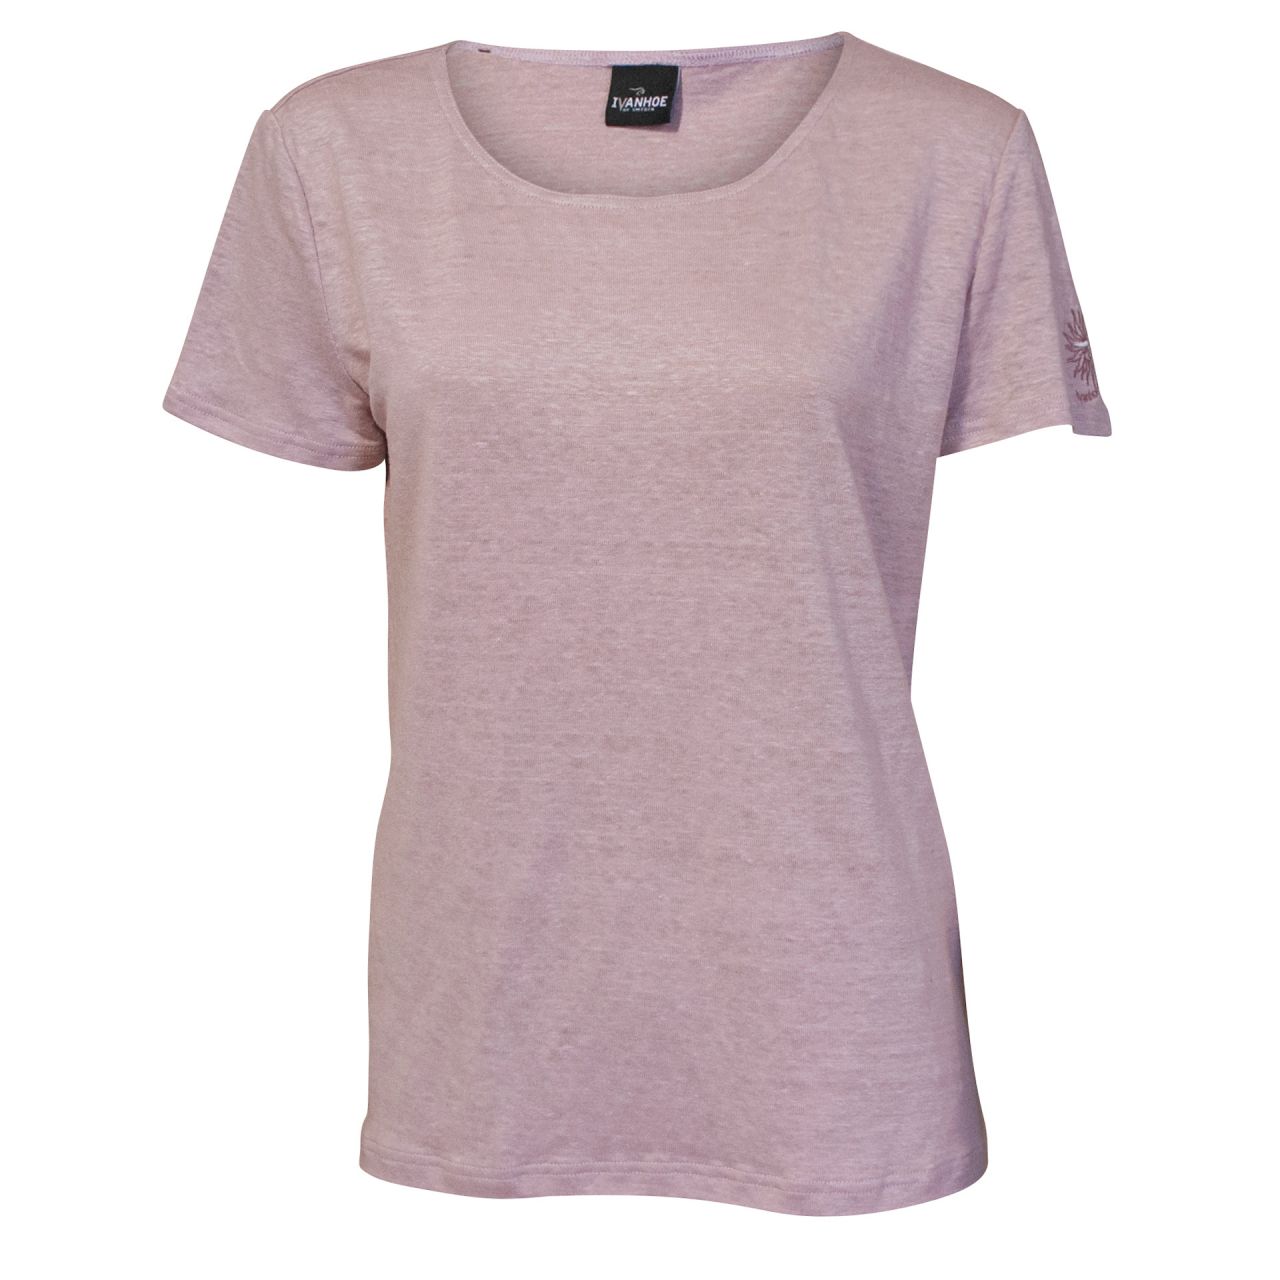 Damen-T-Shirt von IVANHOE, Modell "GY Leila" Pink